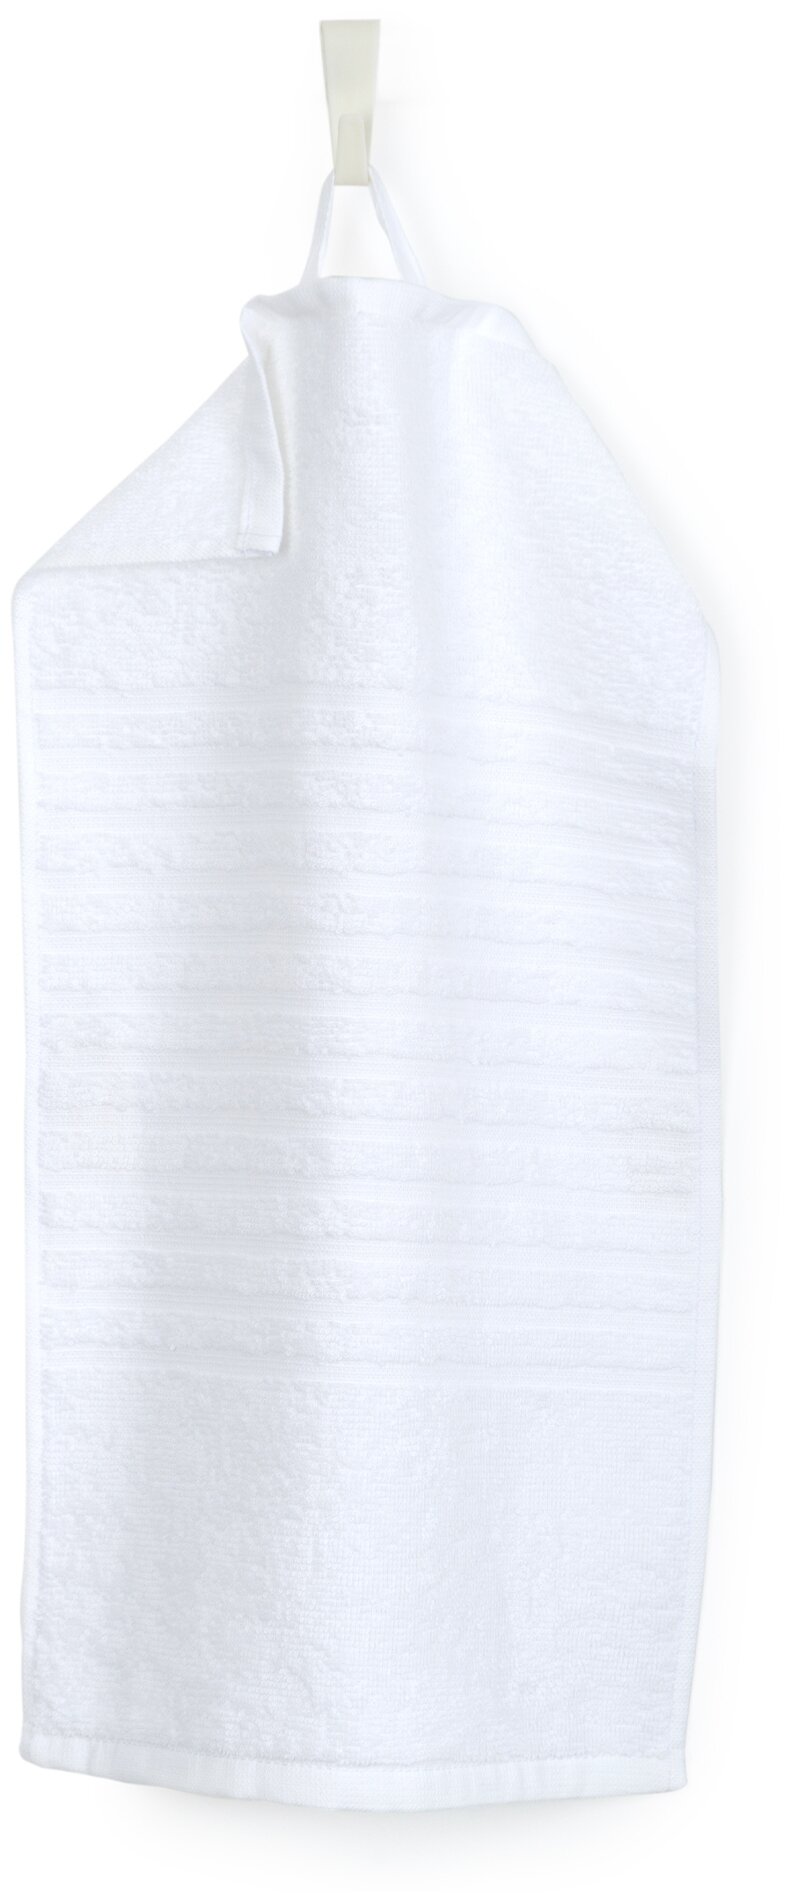 Салфетка махровая, полотенце для лица и рук, Донецкая мануфактура, 30Х50 см,цвет:белый, 100% хлопок - фотография № 1